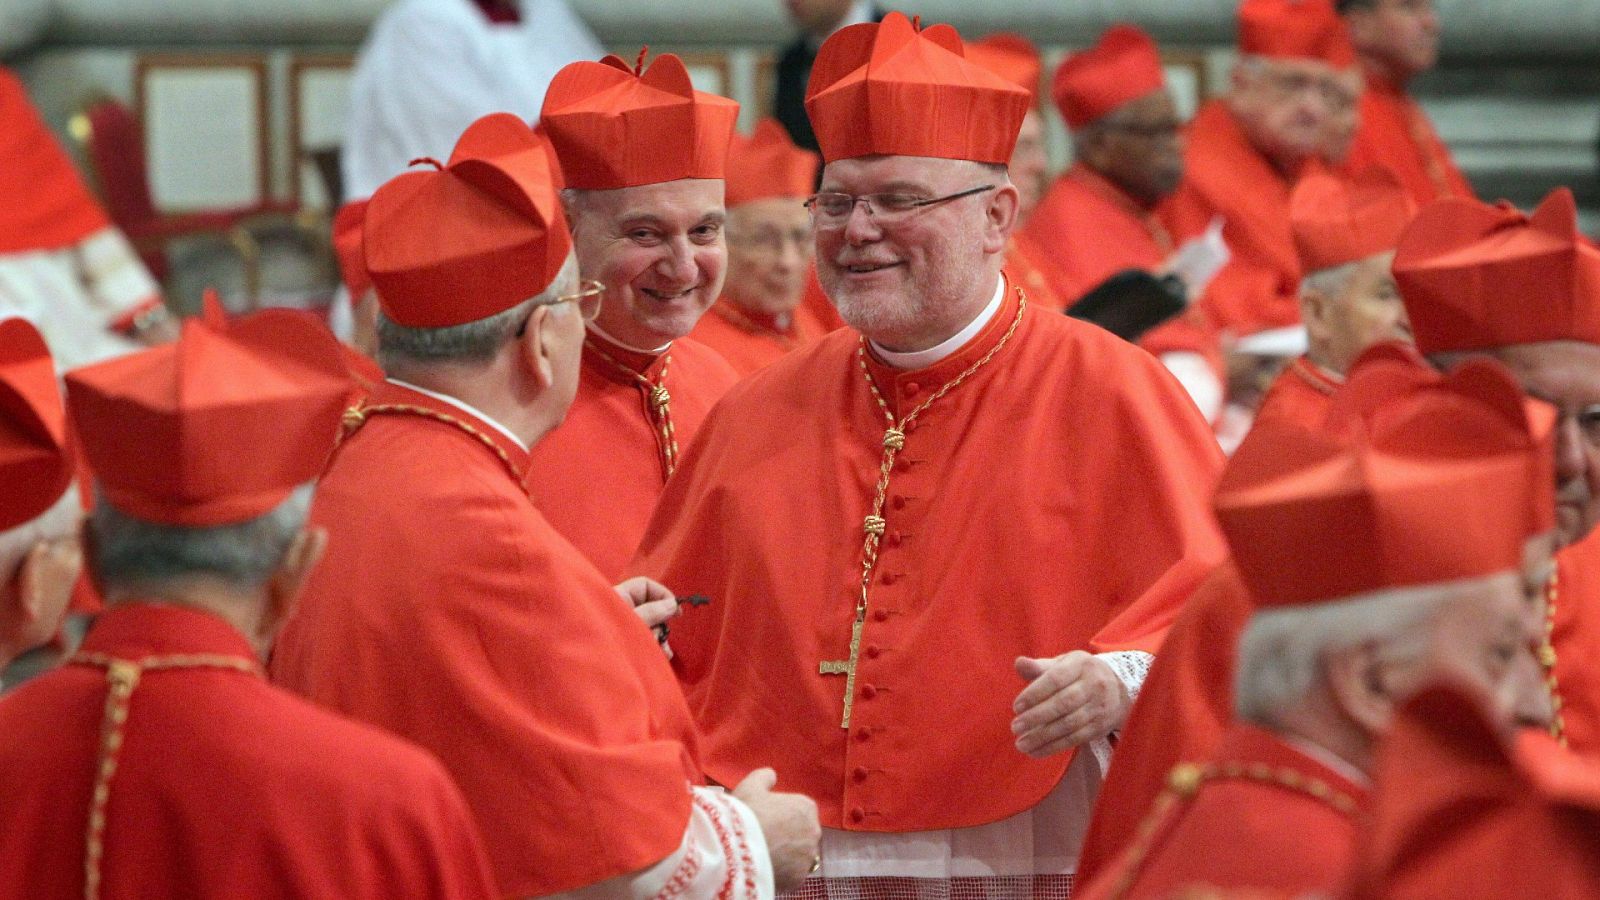 El cardenal alemán Reinhard Marx durante la celebración del tercer consistorio del papa Benedicto XVI